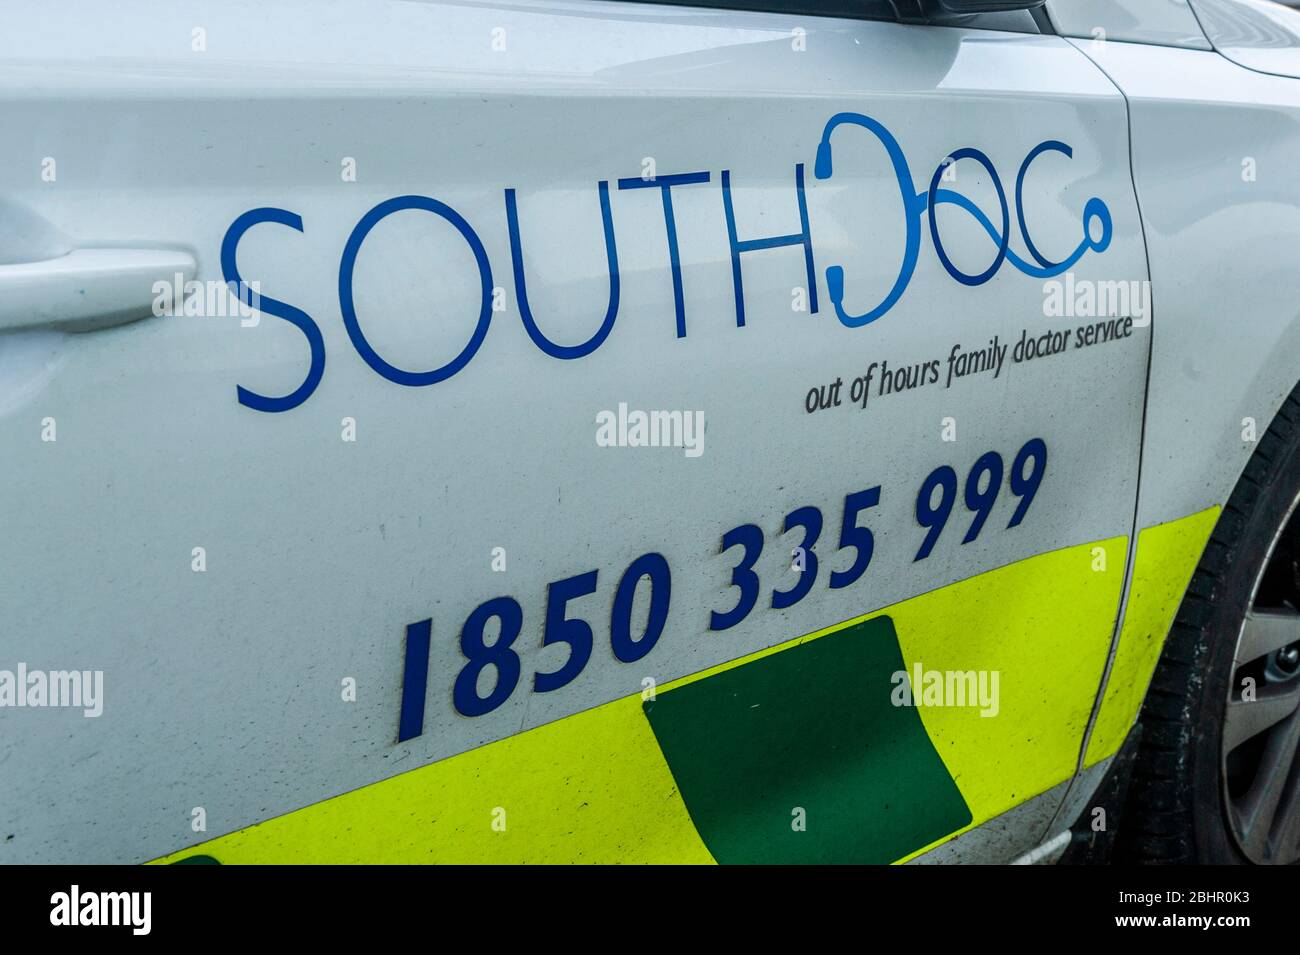 South Doc véhicule d'urgence hors heures d'ouverture en Irlande Banque D'Images